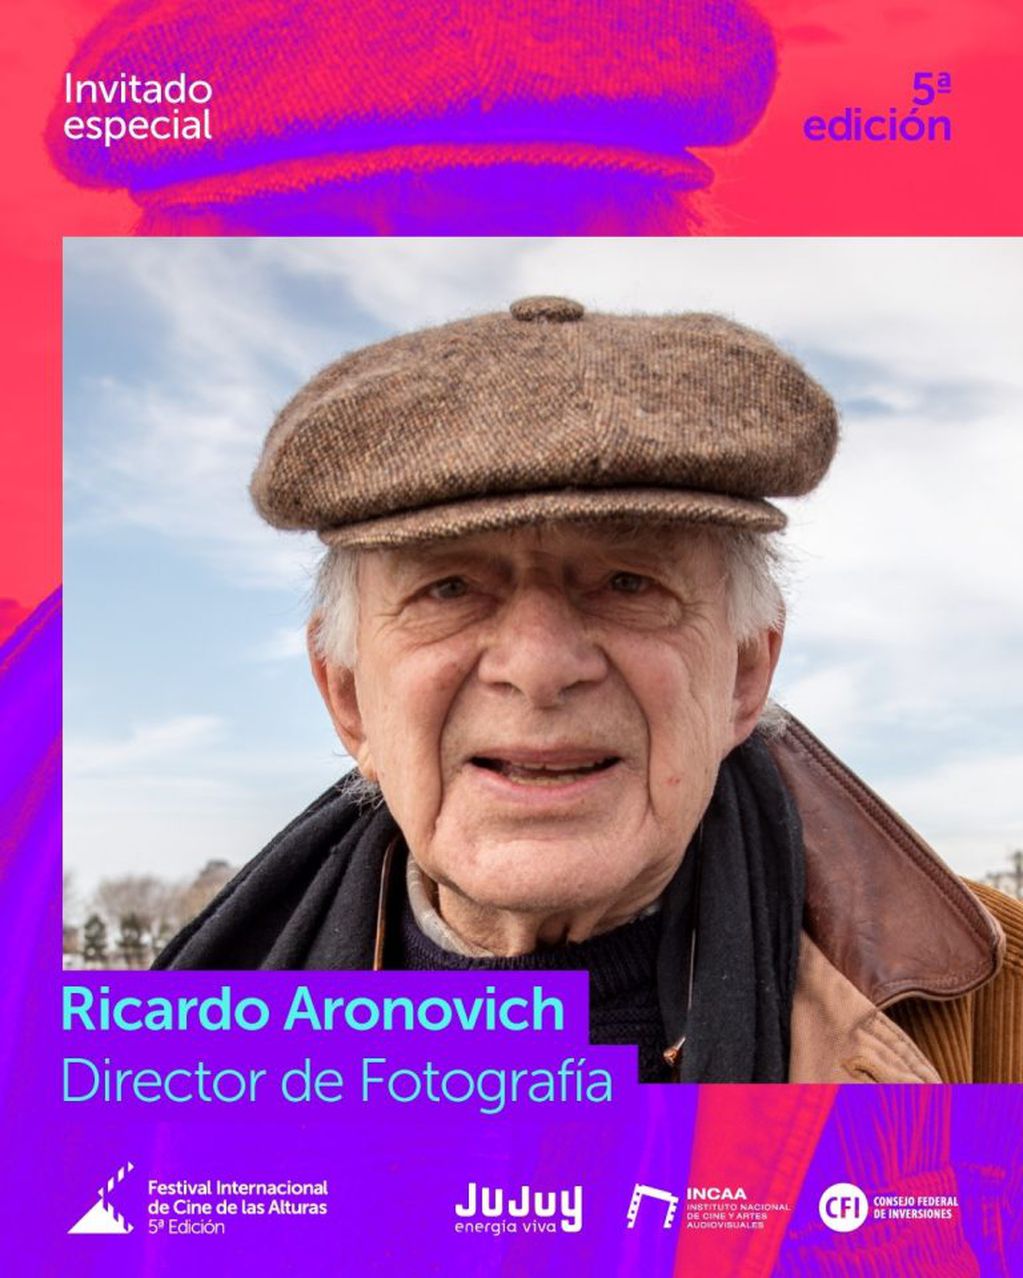 Ricardo Aronovich es uno de los invitados especiales del Festival Internacional de Cine de las Alturas que se desarrollará hasta el sábado 14 en San Salvador de Jujuy.